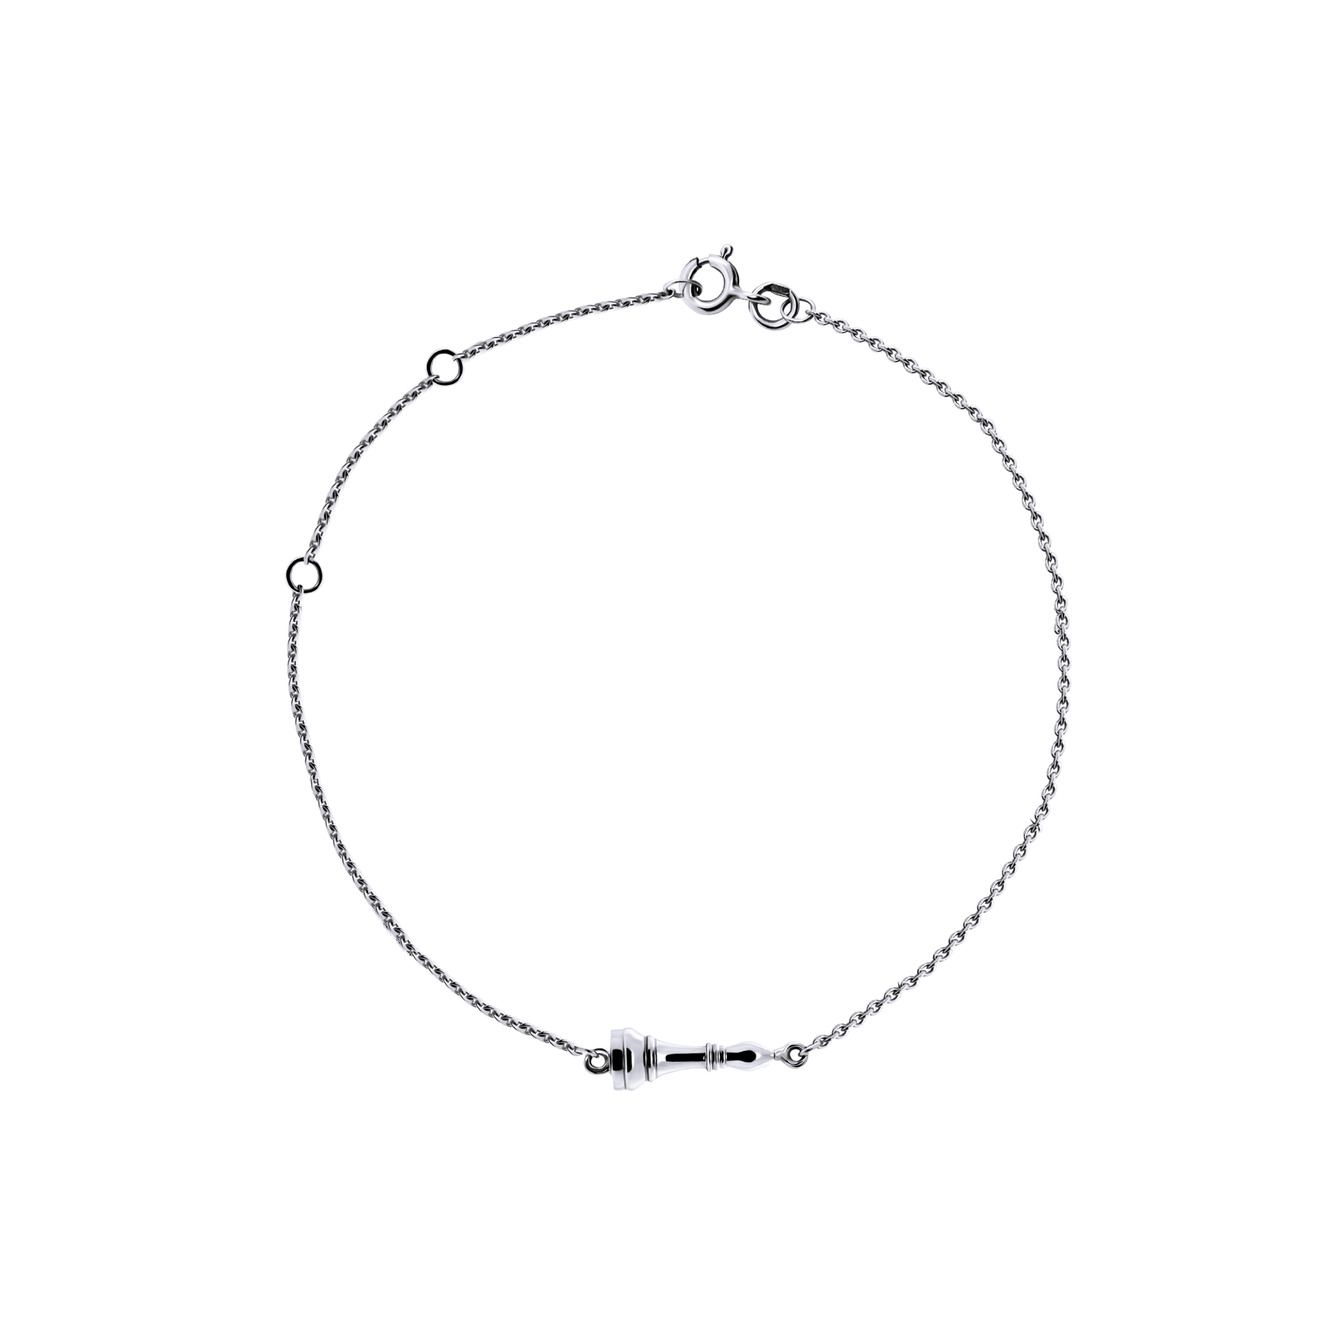 Prosto Jewelry Тонкий браслет «Слон» из серебра prosto jewelry медальон да нет из серебра